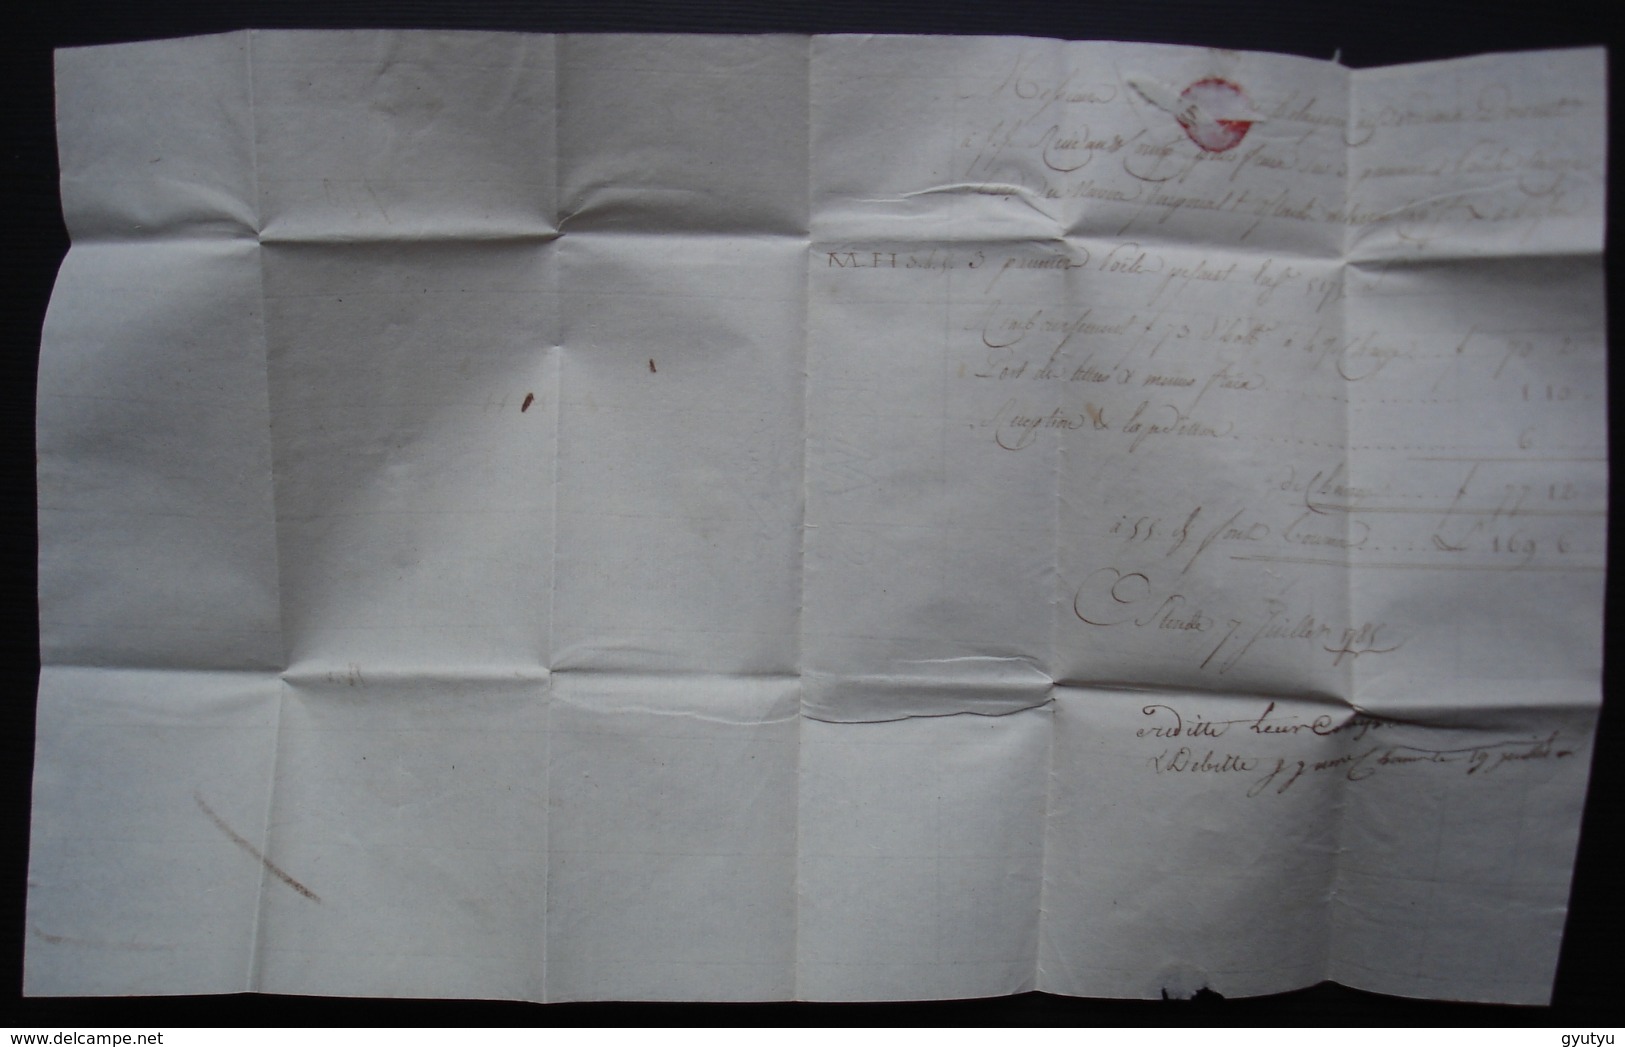 Ostende (Belgique) 1785 Lettre Pour Les Négociants Hollagray De Bordeaux (France) Marque OSTENDE - 1714-1794 (Pays-Bas Autrichiens)